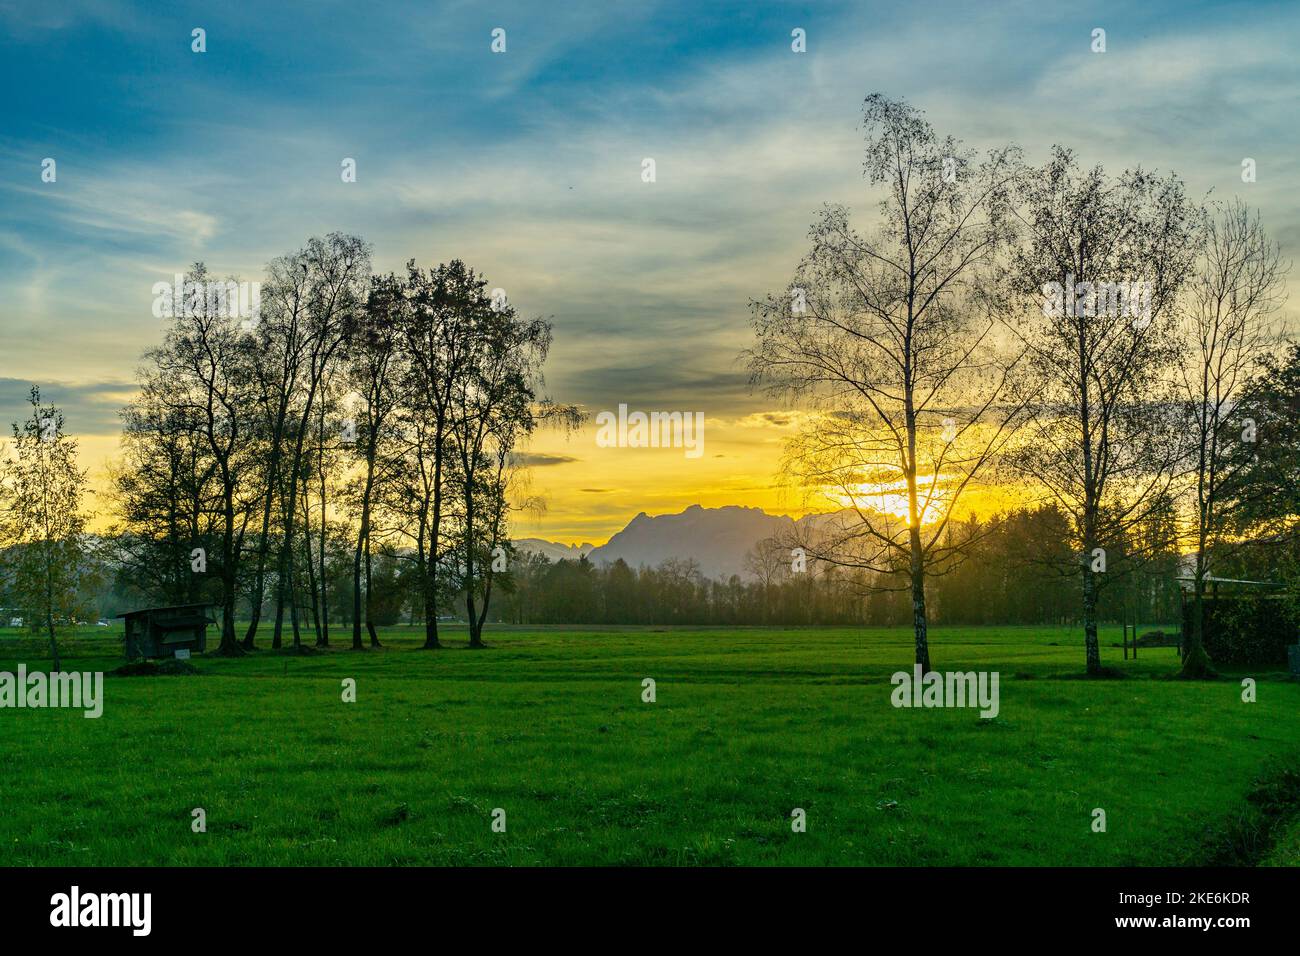 Im Rheintal, mit Wiesen und Felder, Bäumen und Schweizer Bergen im hintergrund. Föhn mit Wolken und Blau, gelb, orange, roter Himmel Banque D'Images